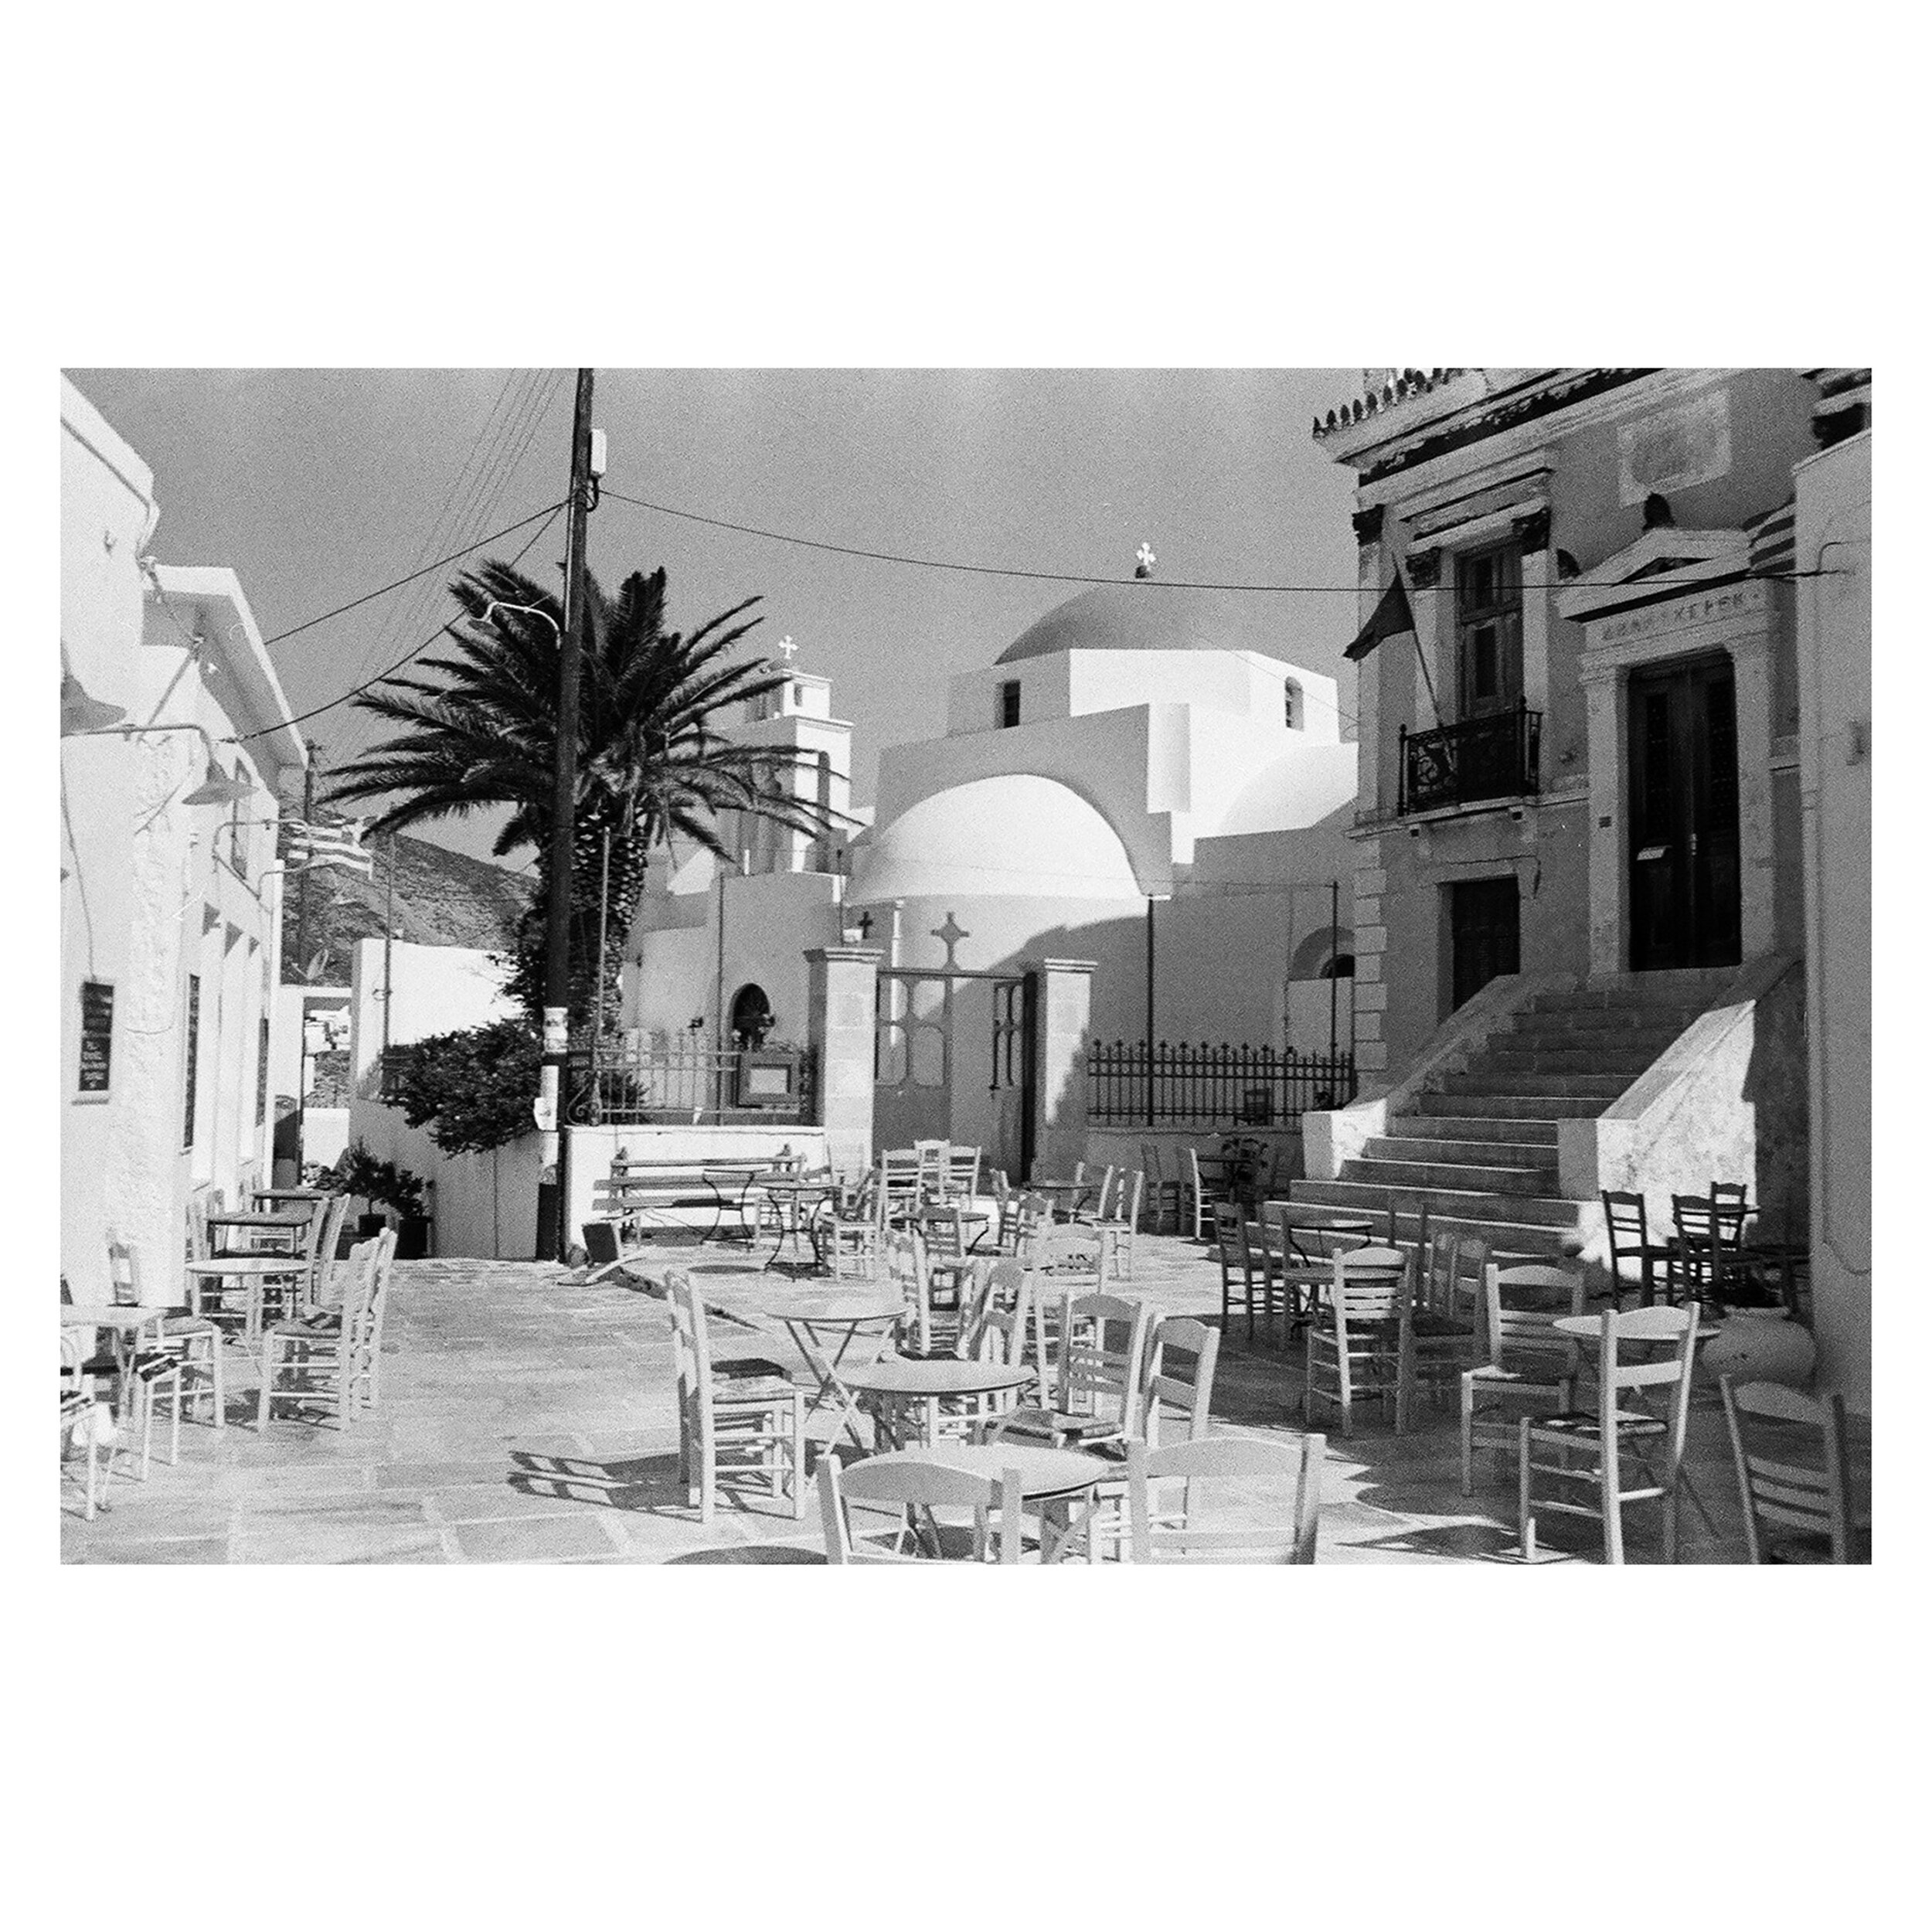 Serifos, Greece 🪑 #minox #ilford #analog #filmonly #serifos